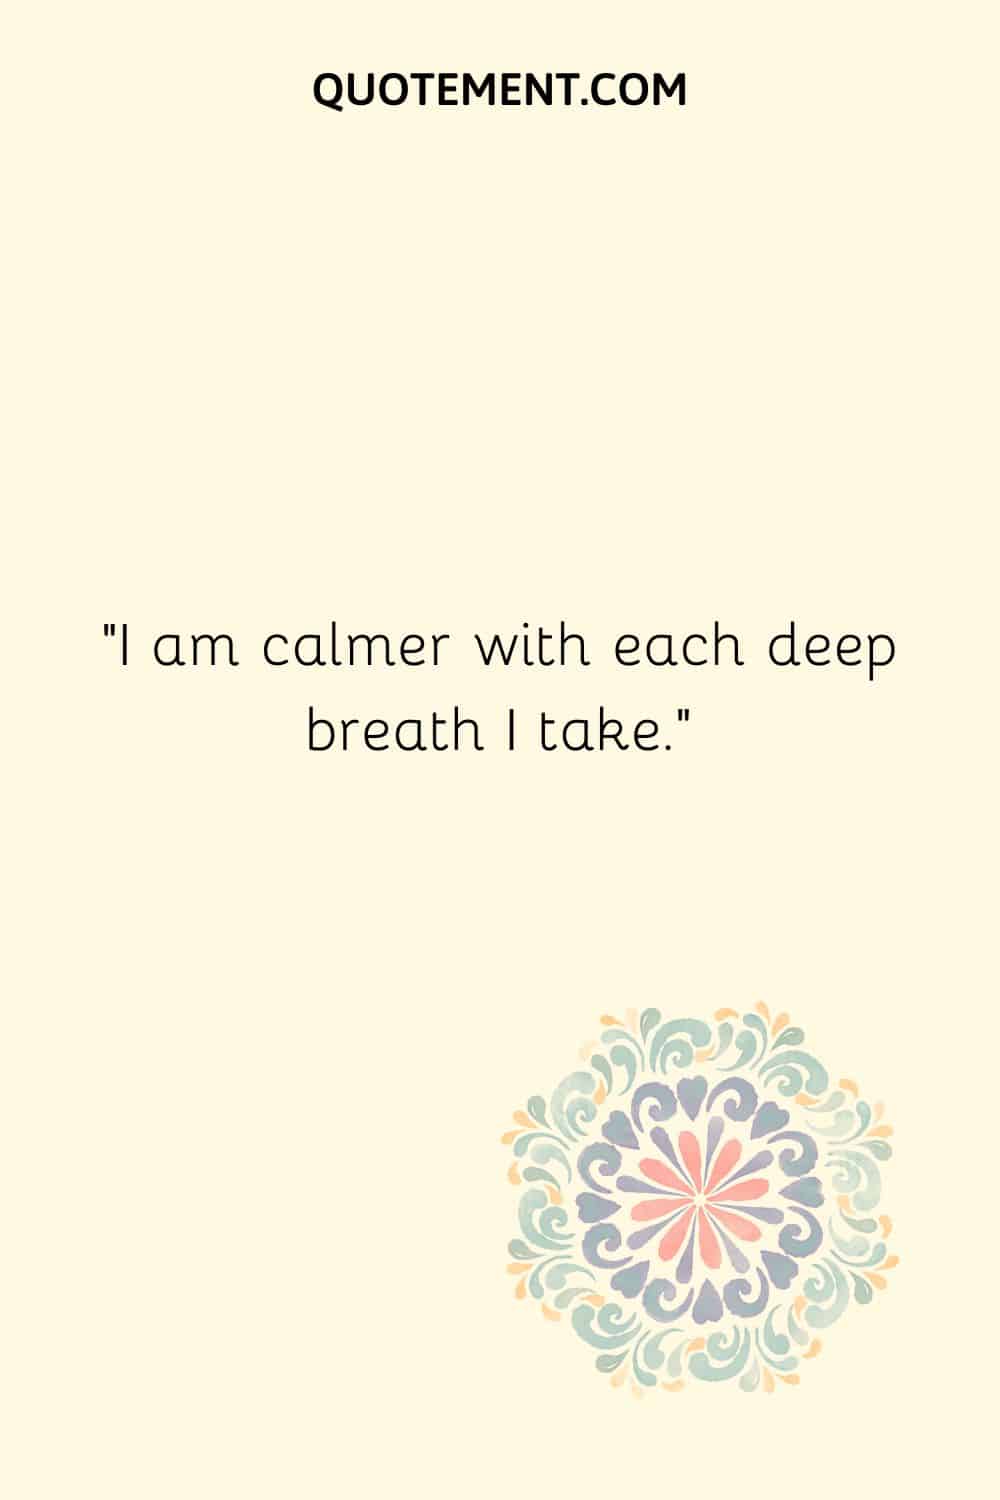 I am calmer with each deep breath I take